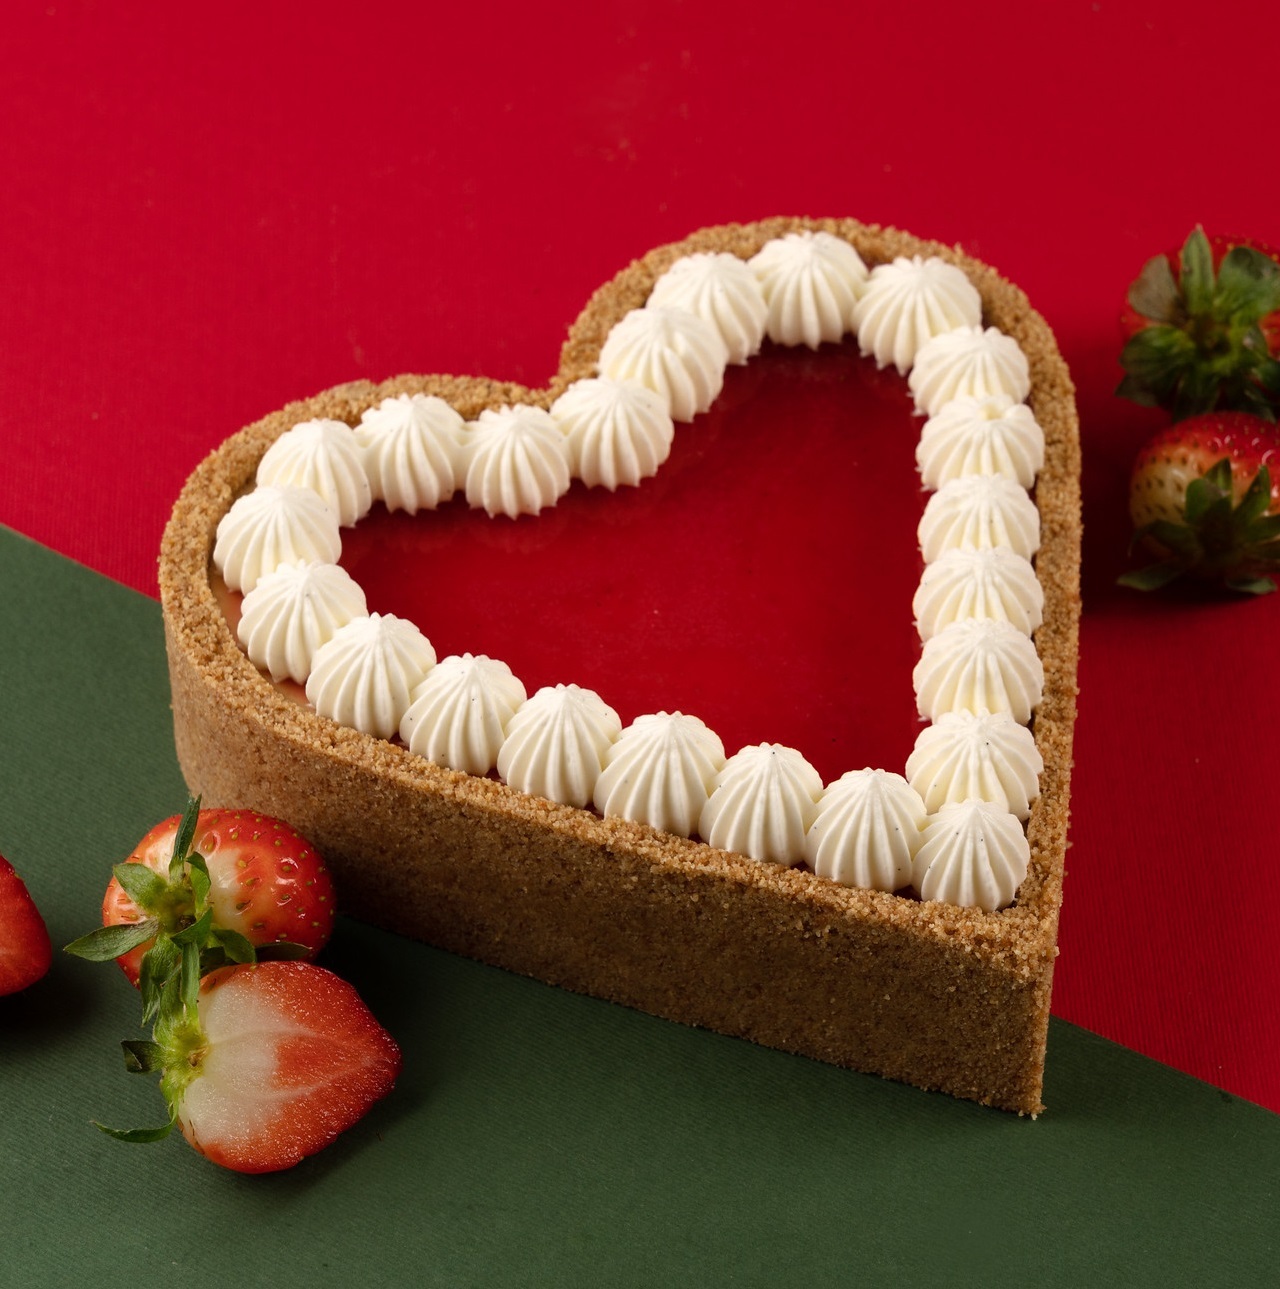 Strawberry Heart cheesecake